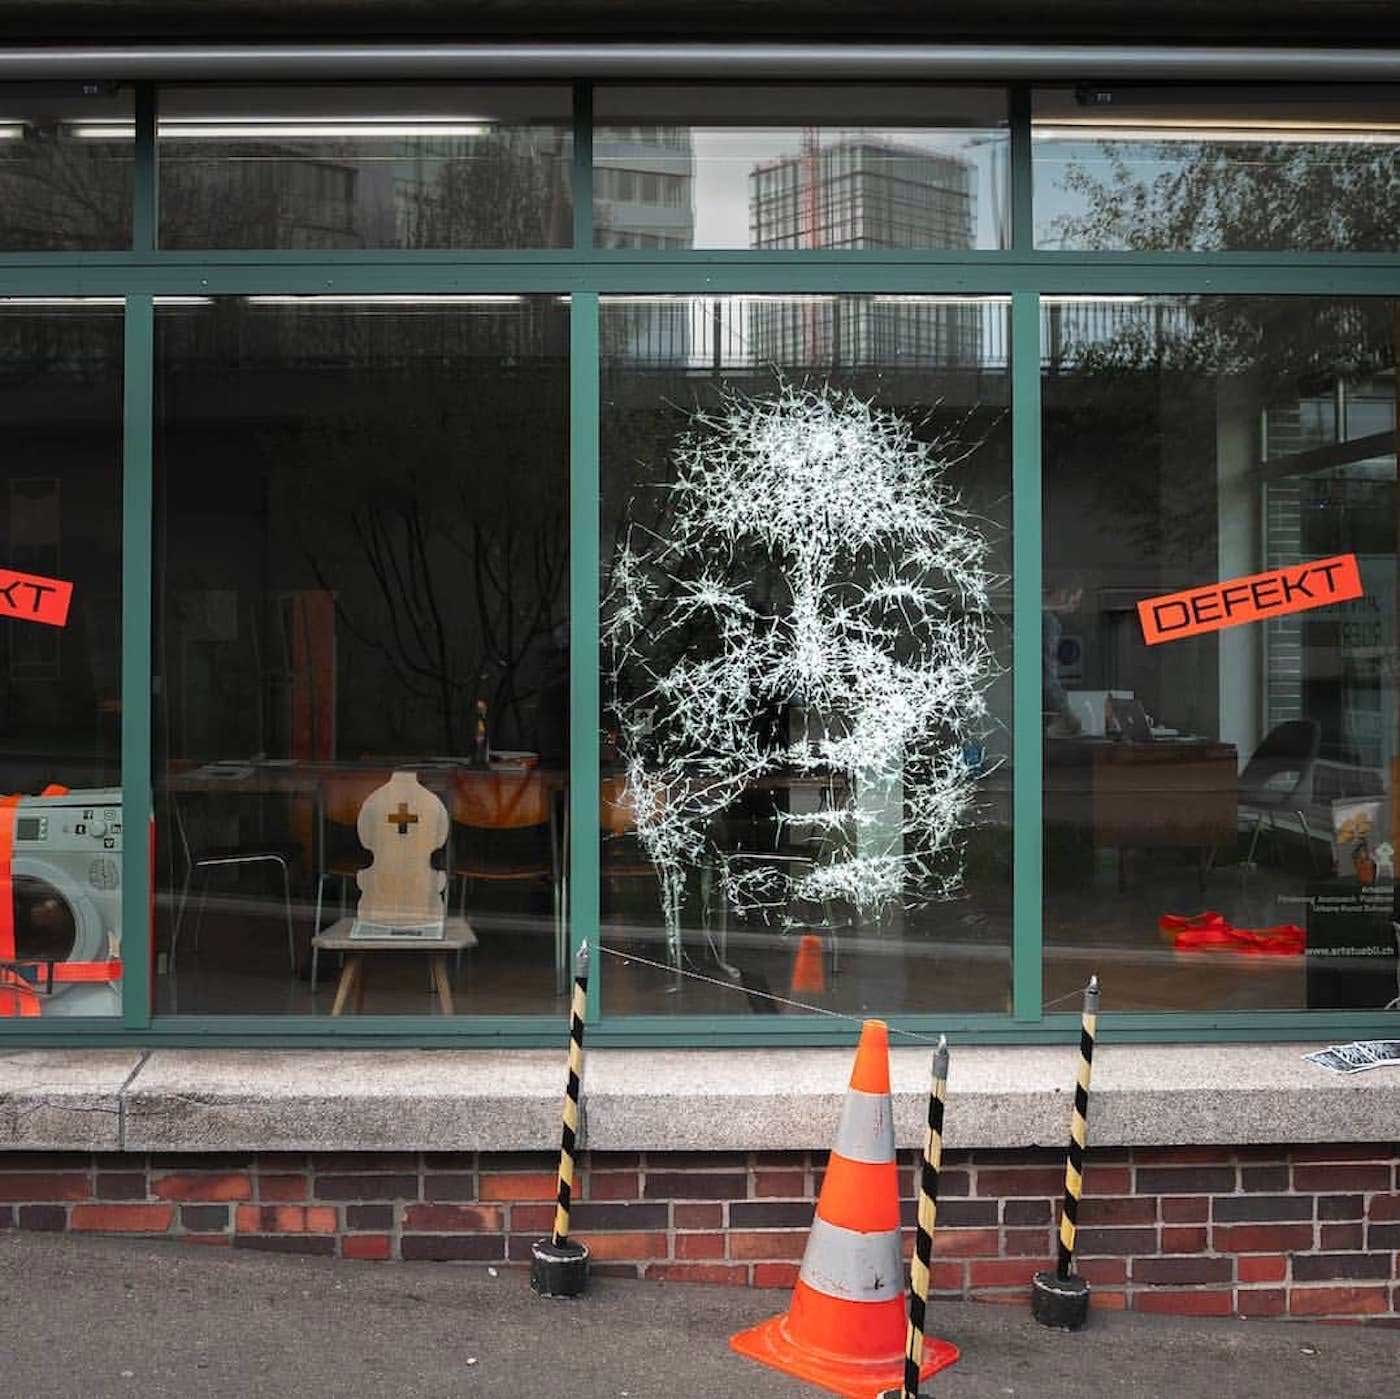 Portrait aus zersprungenem Fensterglas Simon-Berger-Defekt-installation_01 